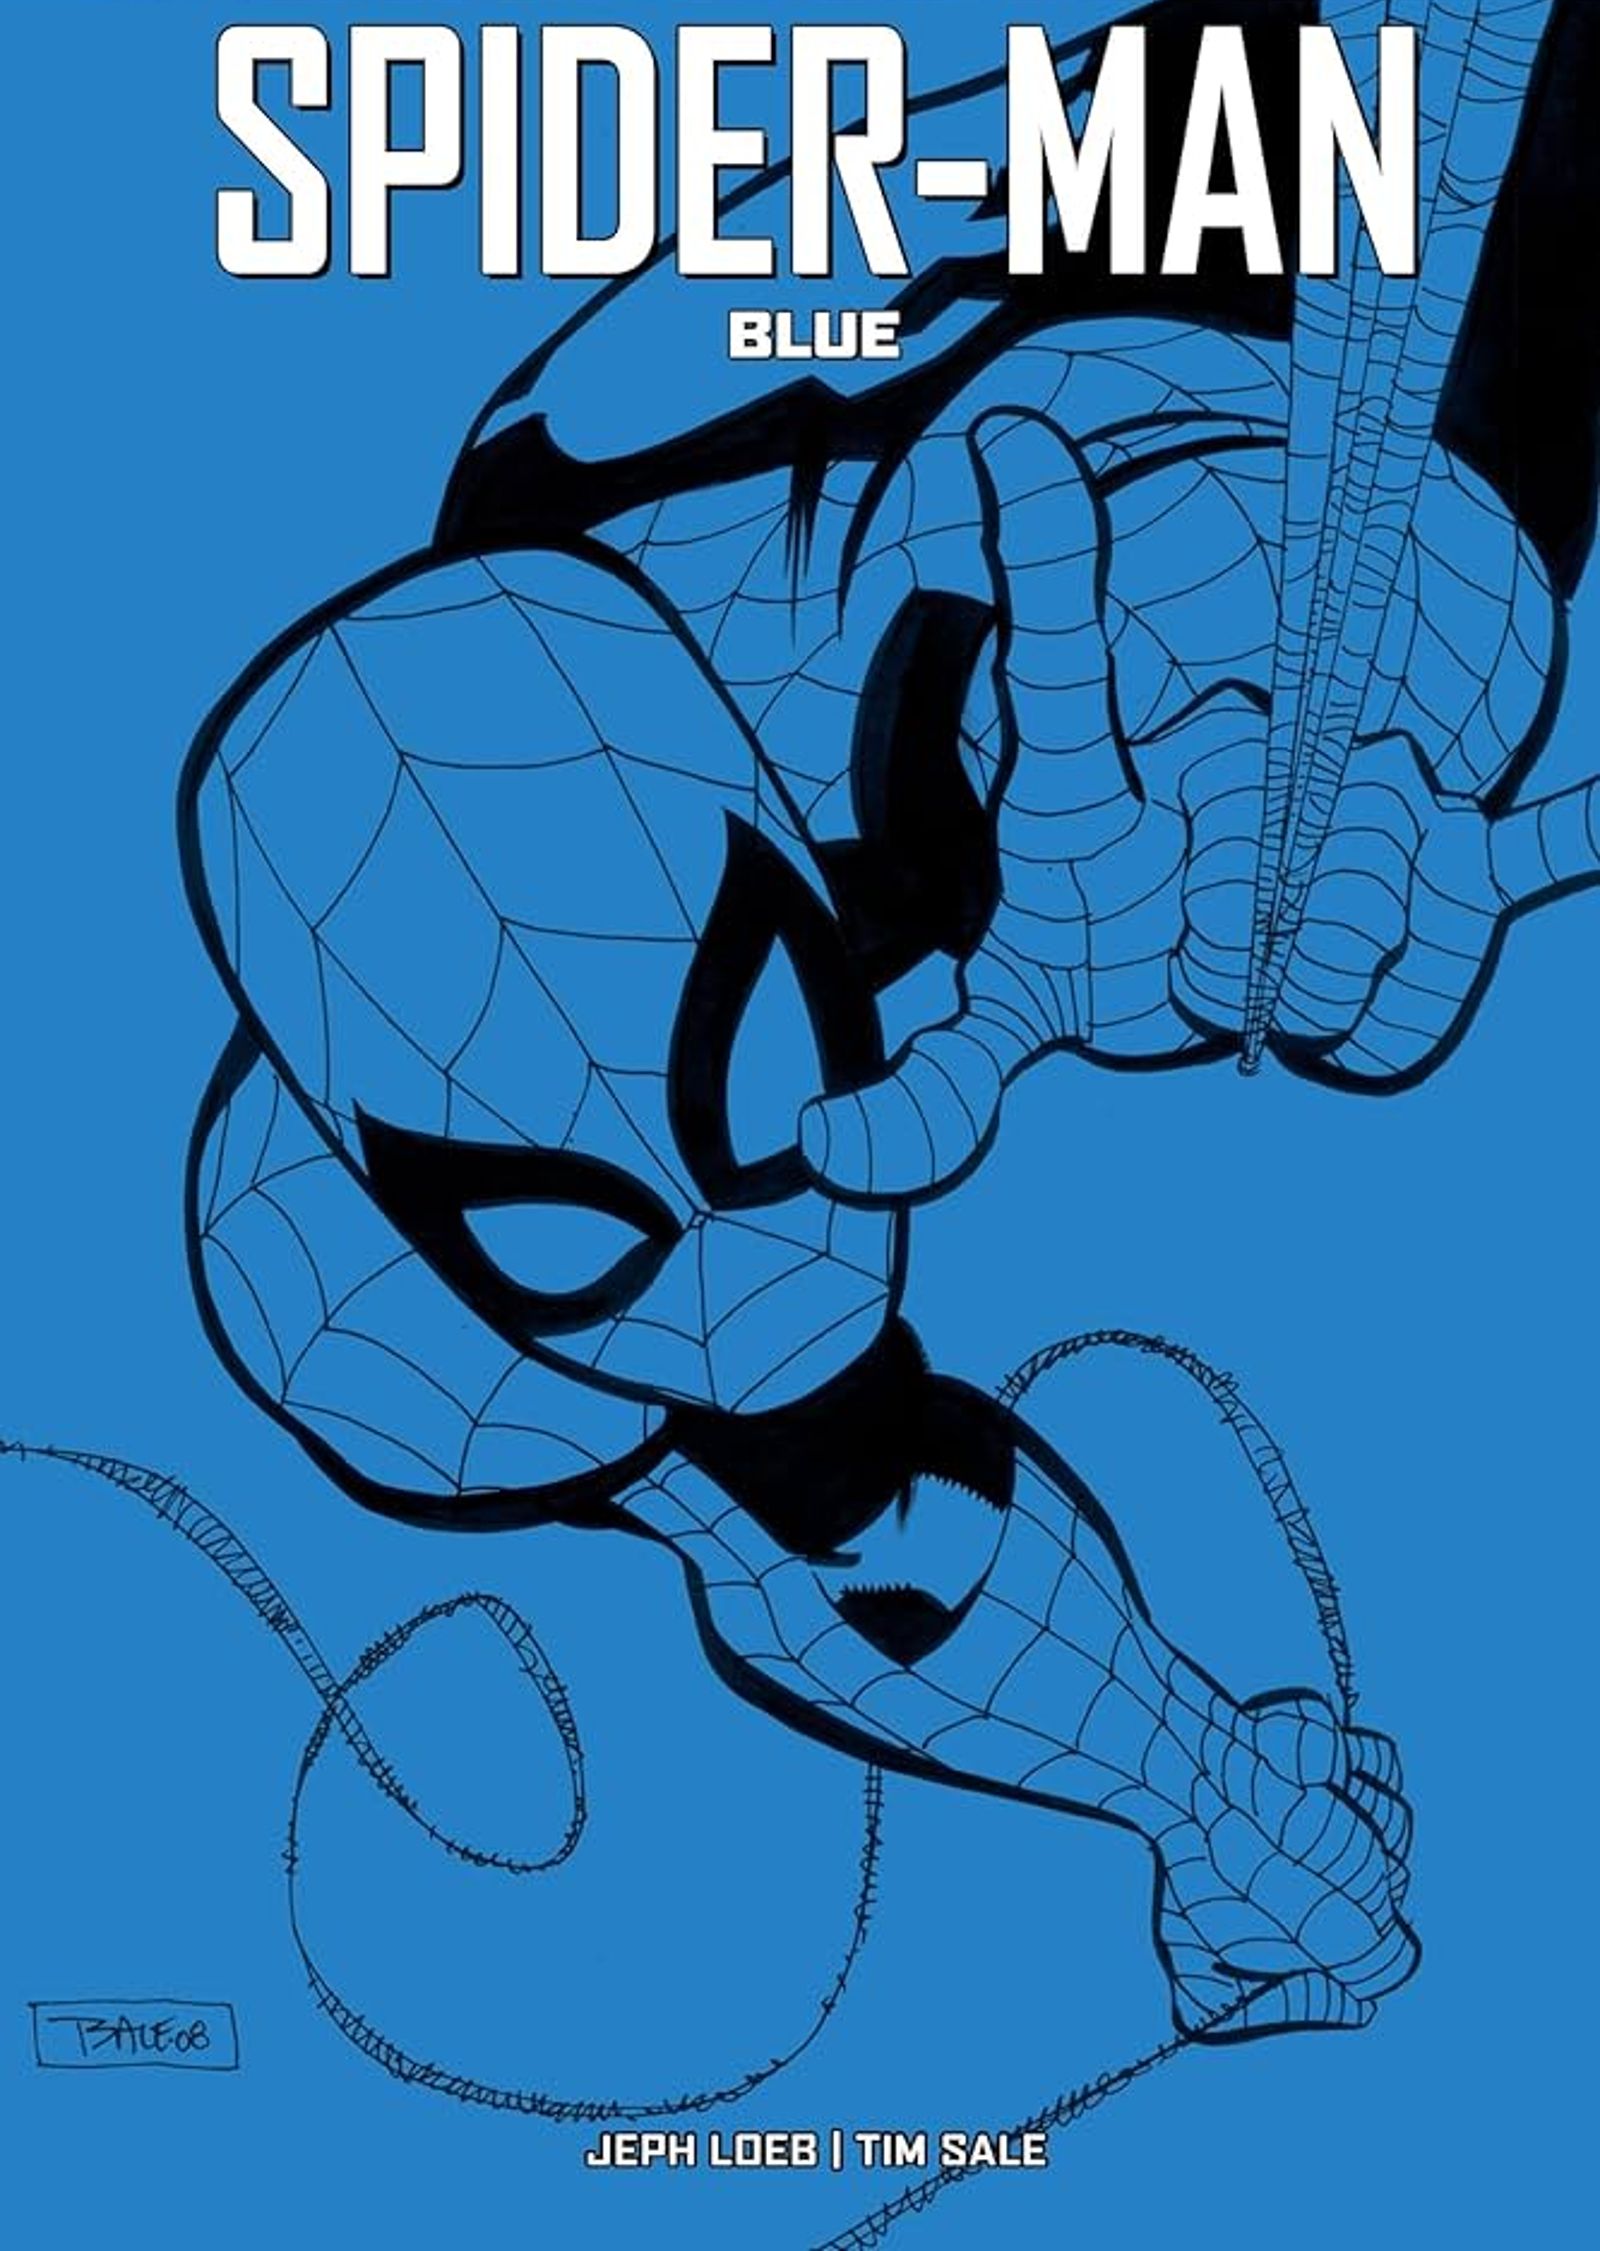 Capa completa do Homem-Aranha Azul